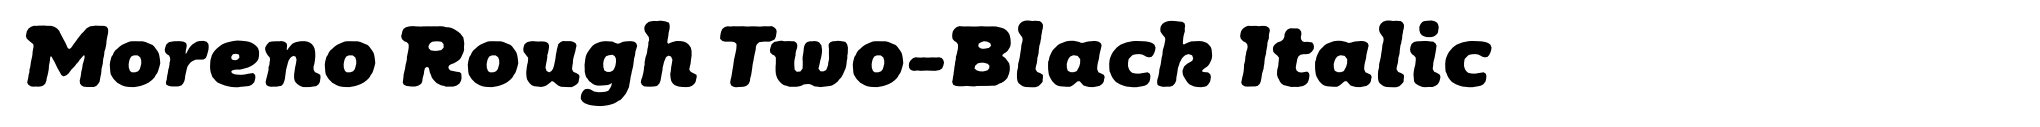 Moreno Rough Two-Black Italic image